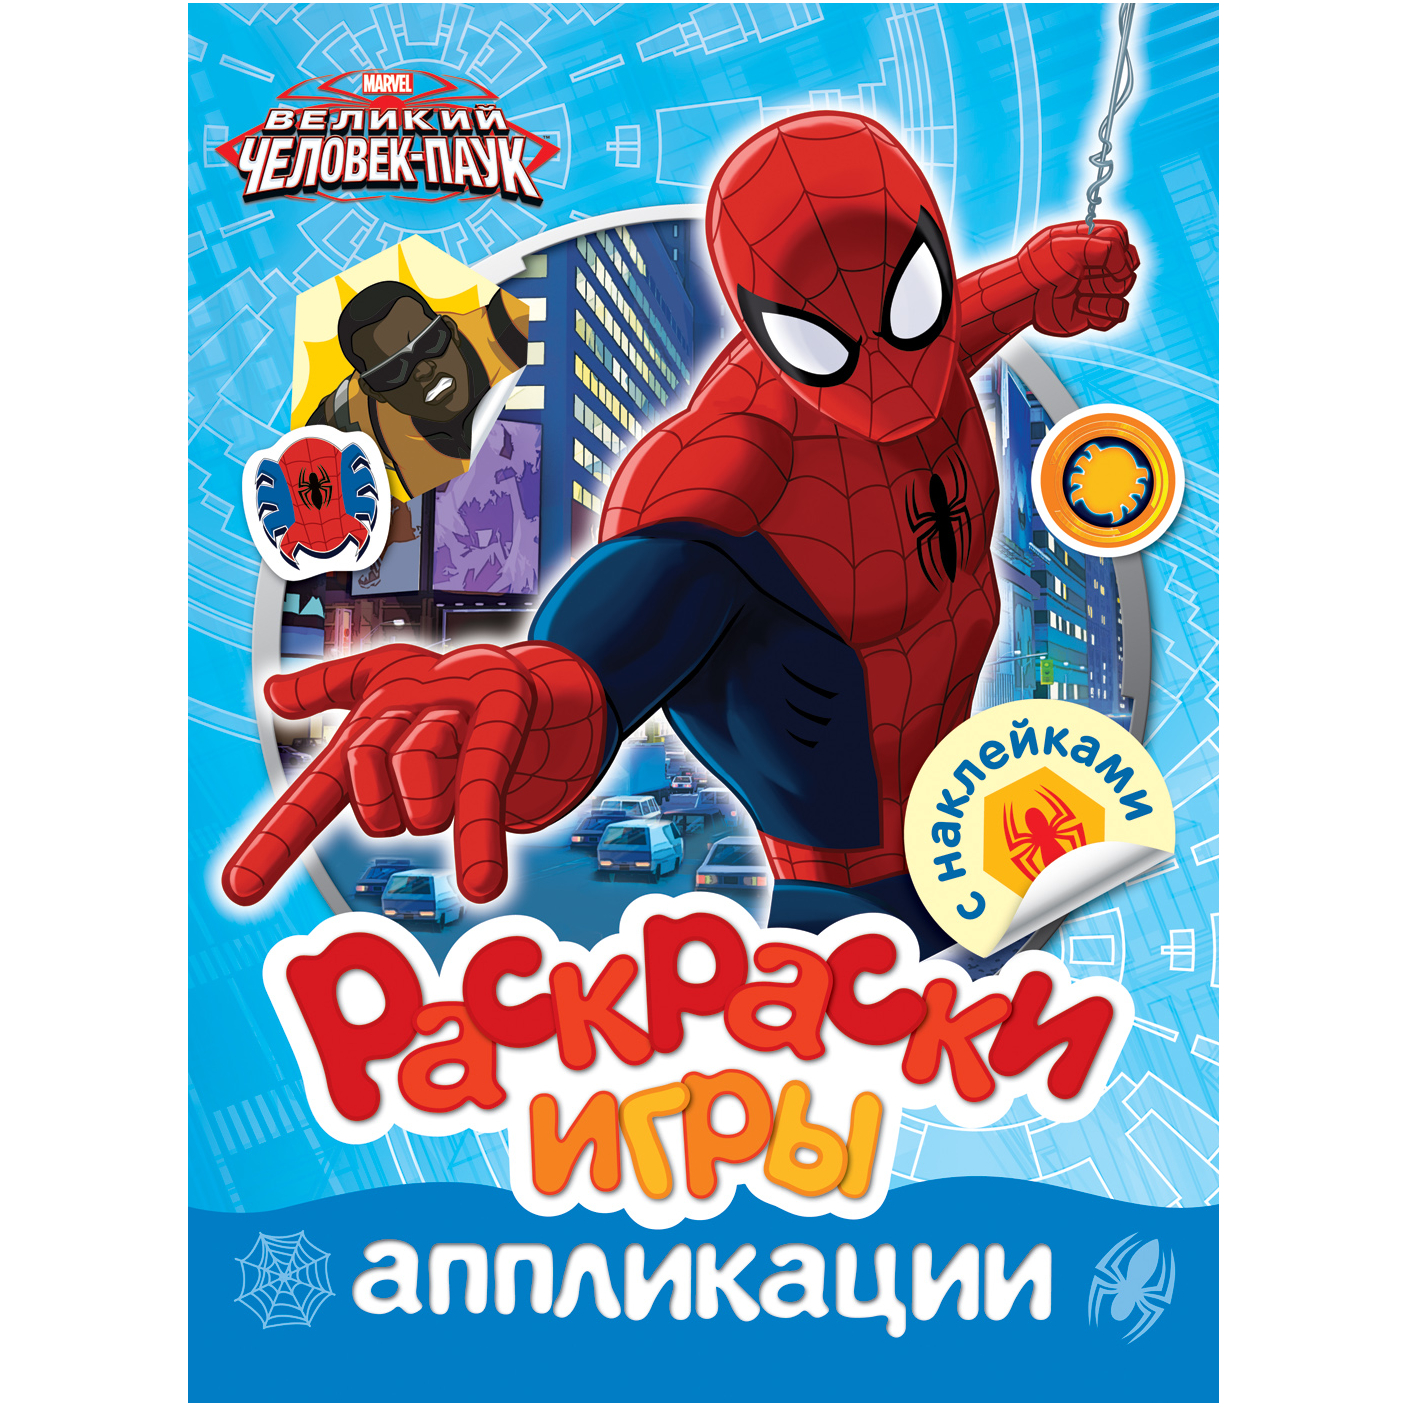 Раскраски, игры, аппликации с наклейками Marvel Человек-паук.